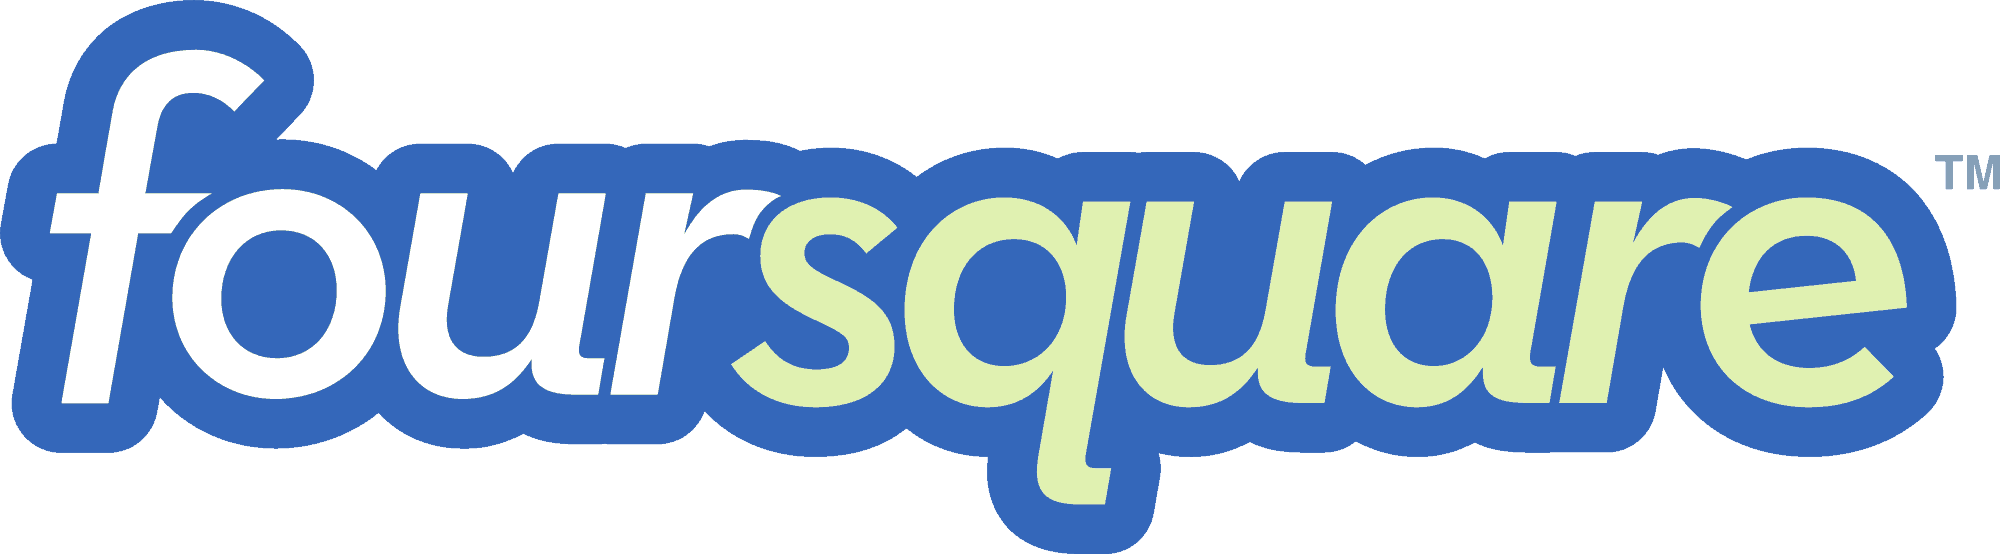 Foursqaure Logo - The FourSquare Logo - LeapFroggr